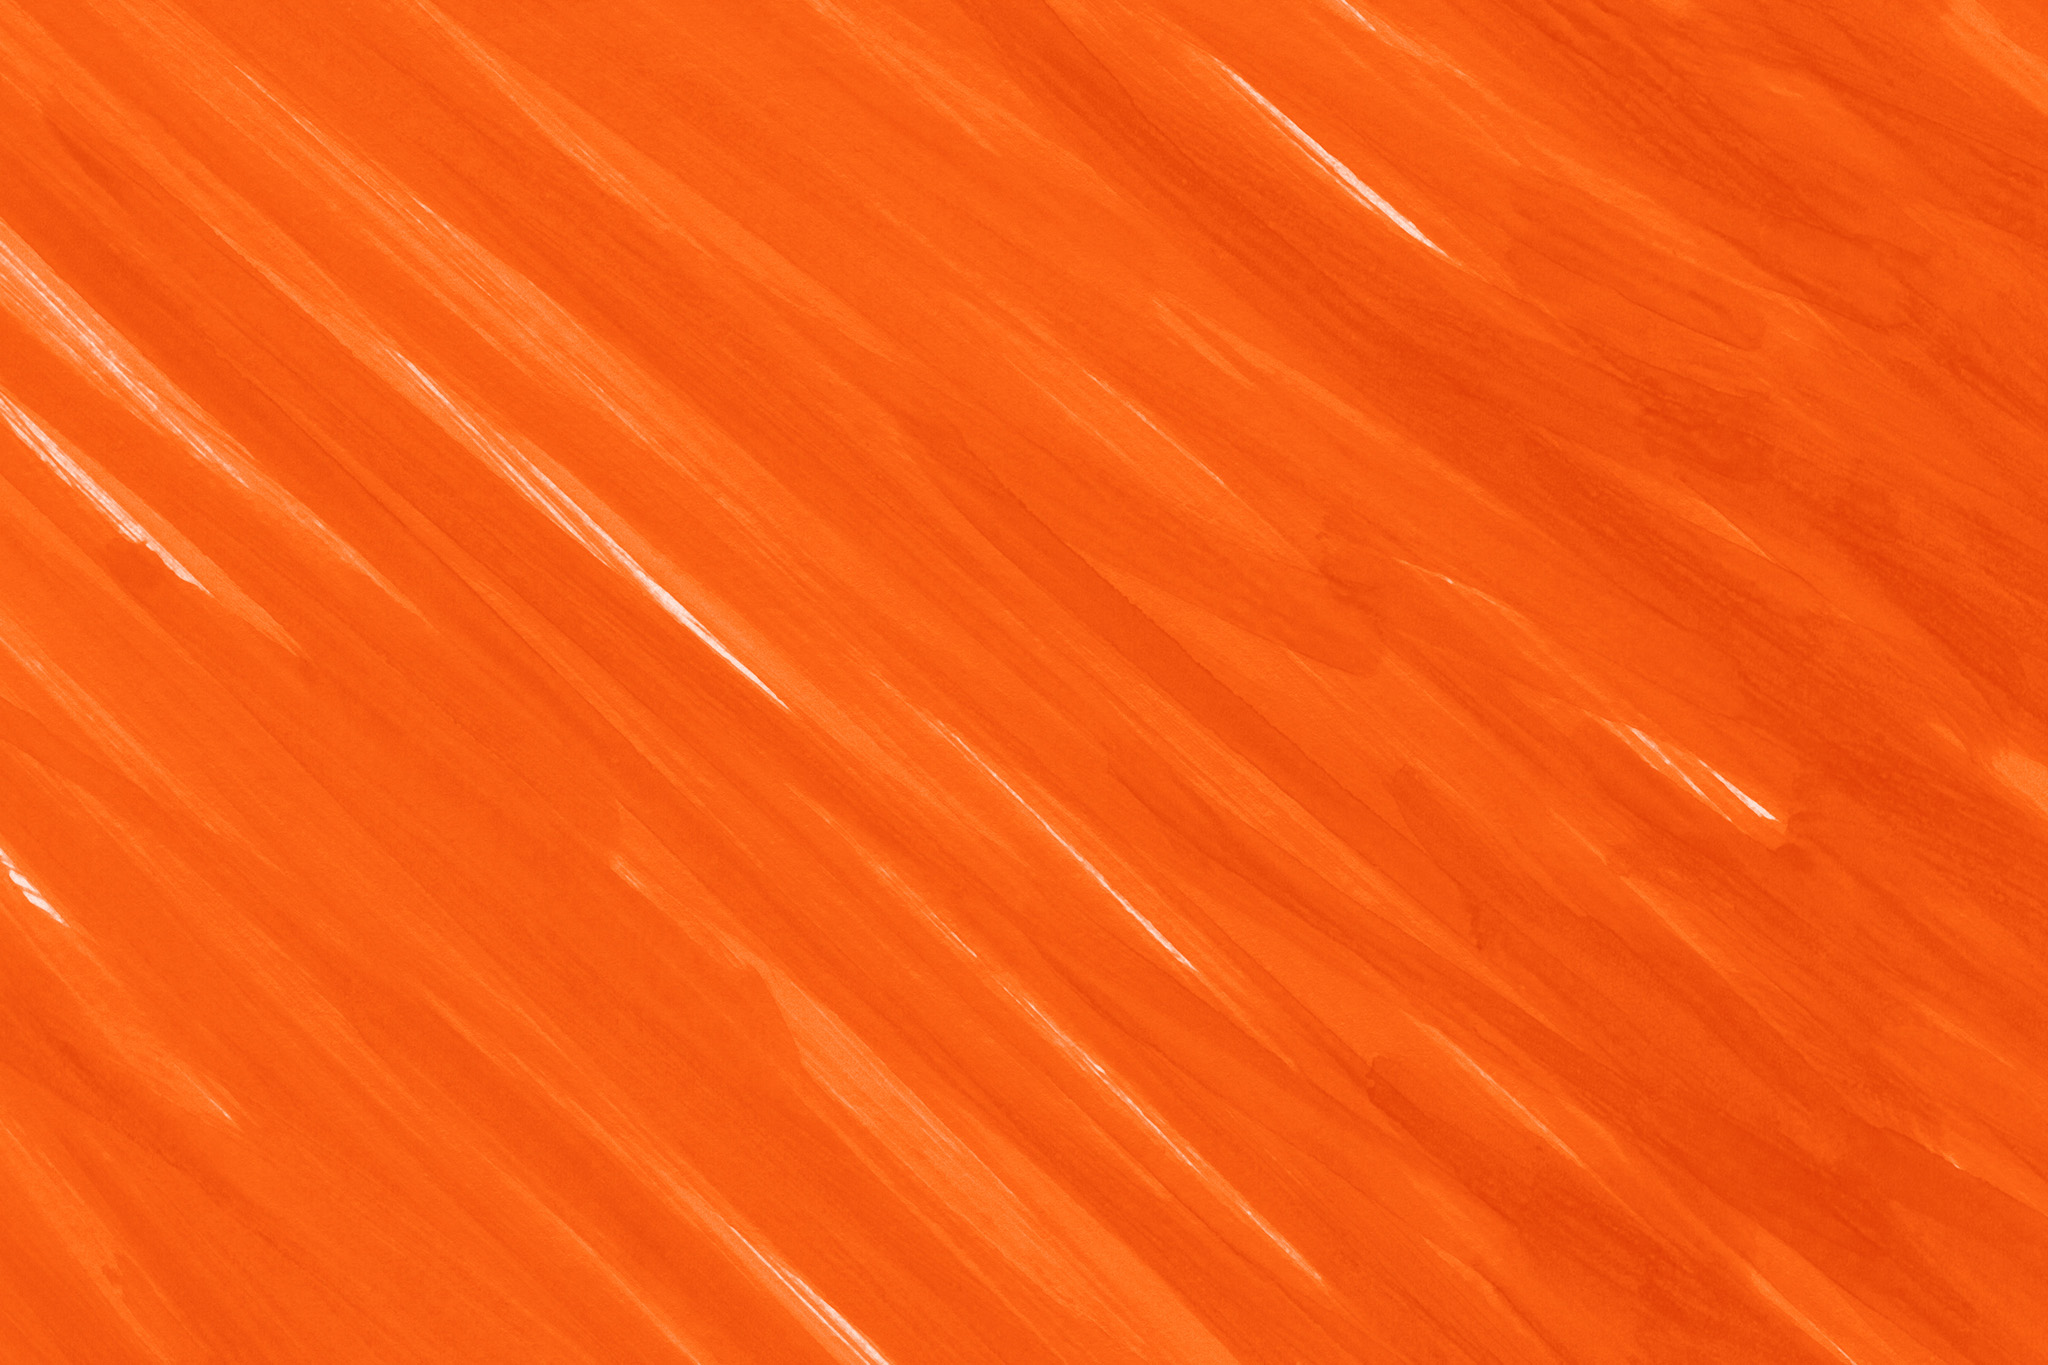 クールなオレンジ色の背景壁紙 の画像素材を無料ダウンロード 1 背景フリー素材 Beiz Images